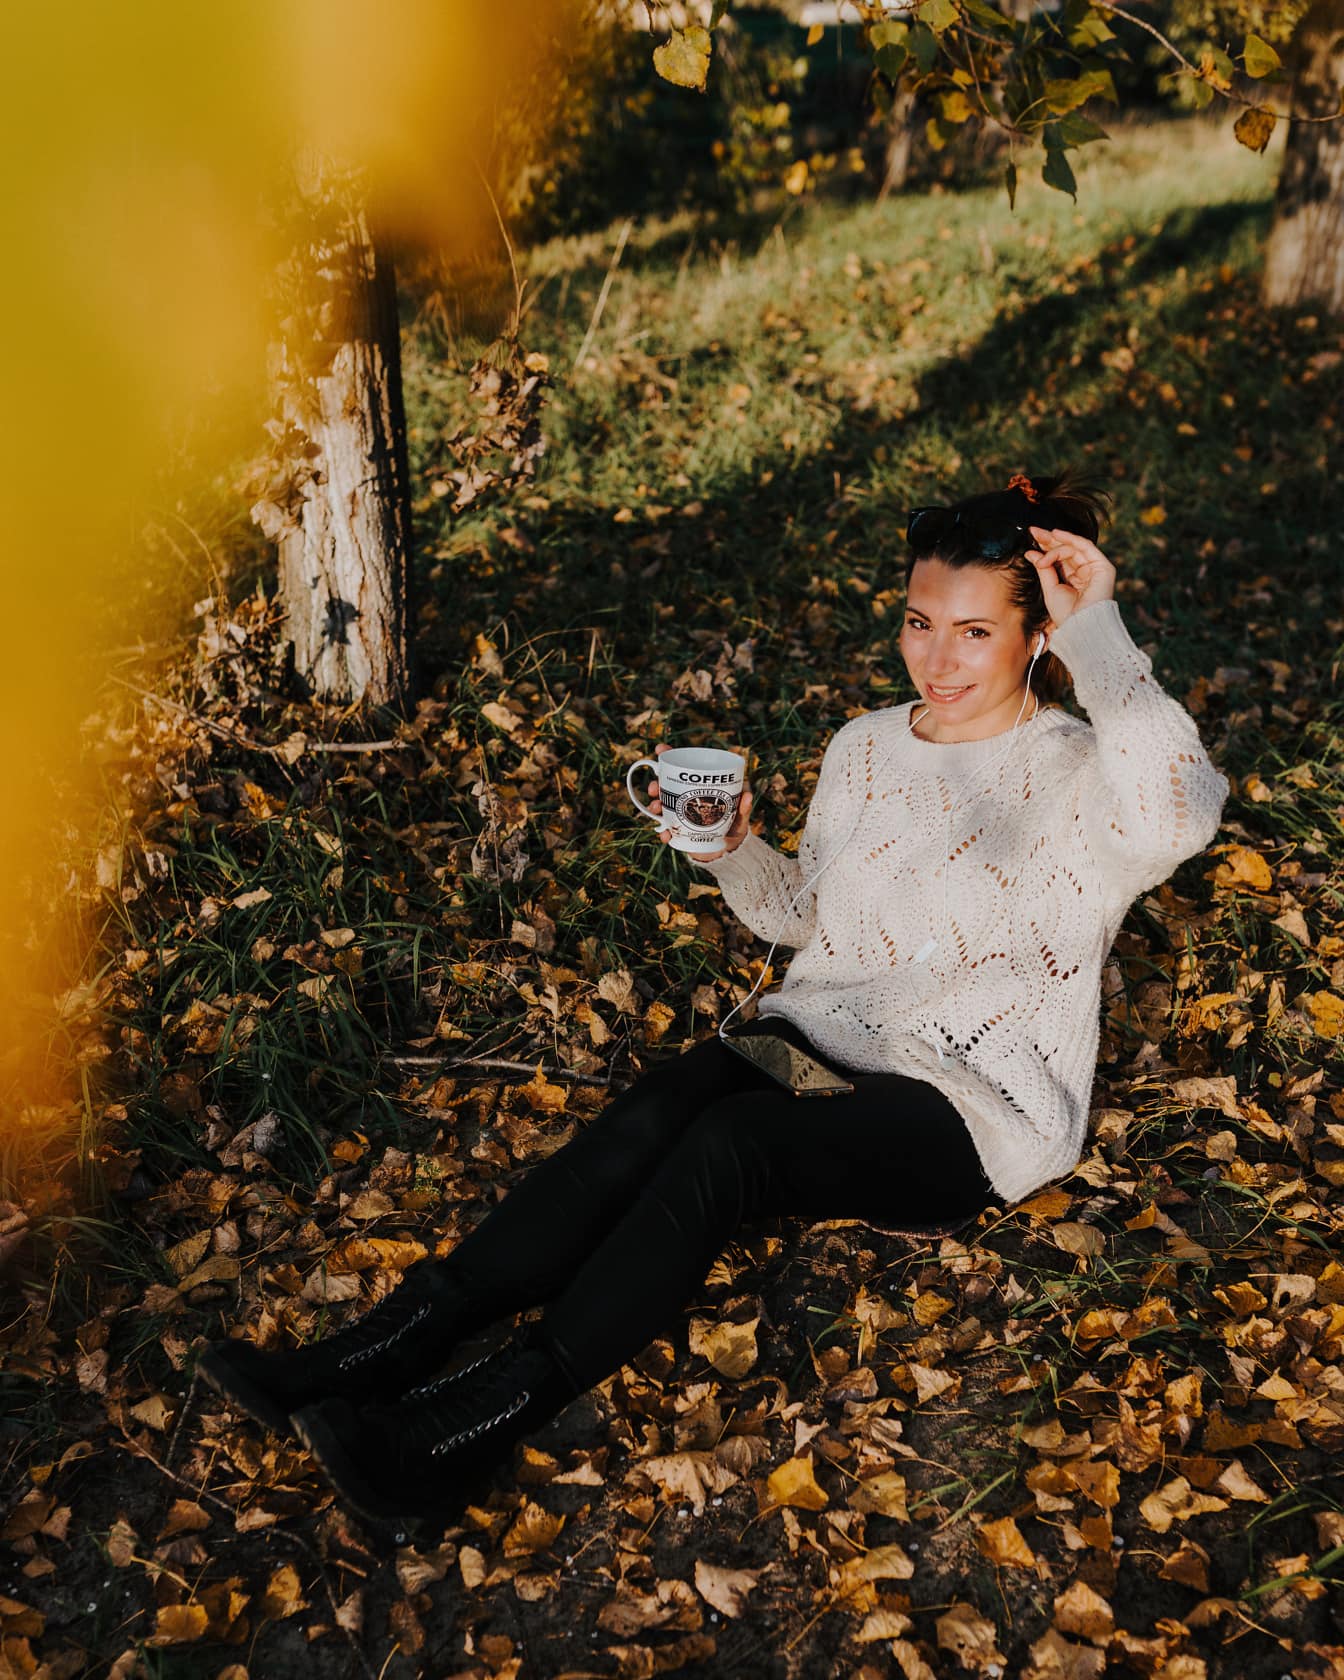 Dame entspannt sich mit Kaffeetasse auf Blättern in der Herbstsaison